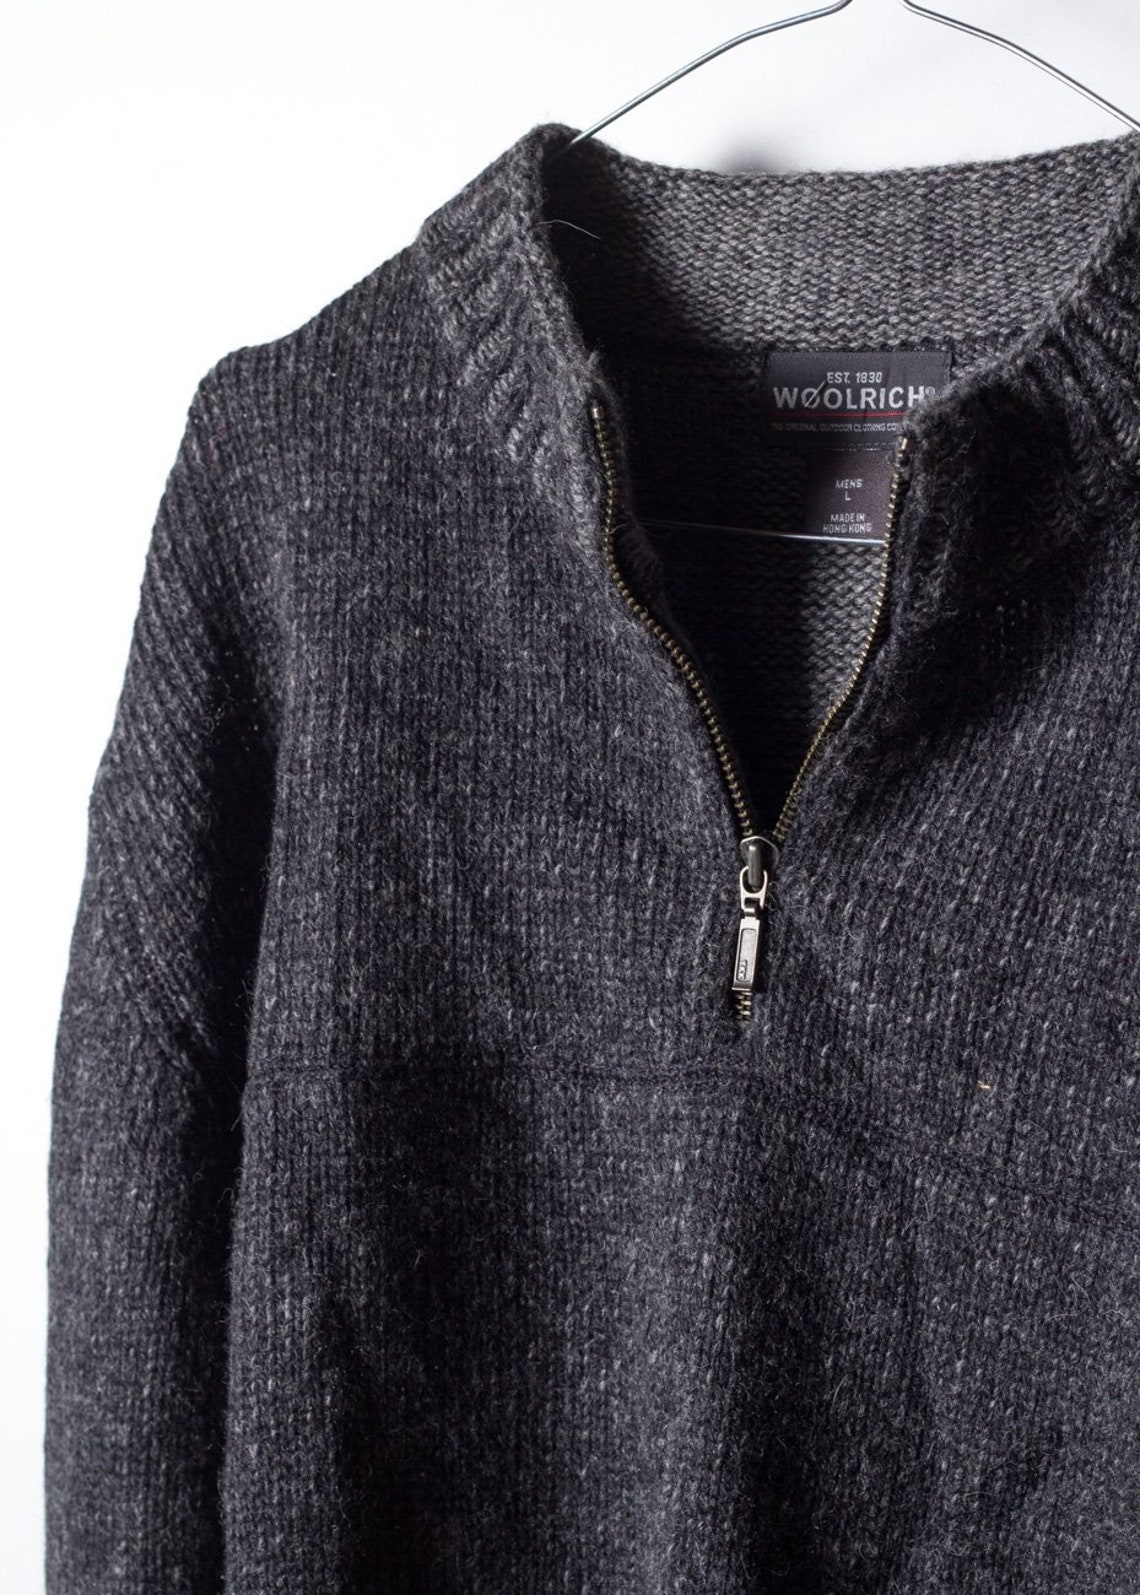 Woolrich Men's Knit Sweater in Grey | Etsy